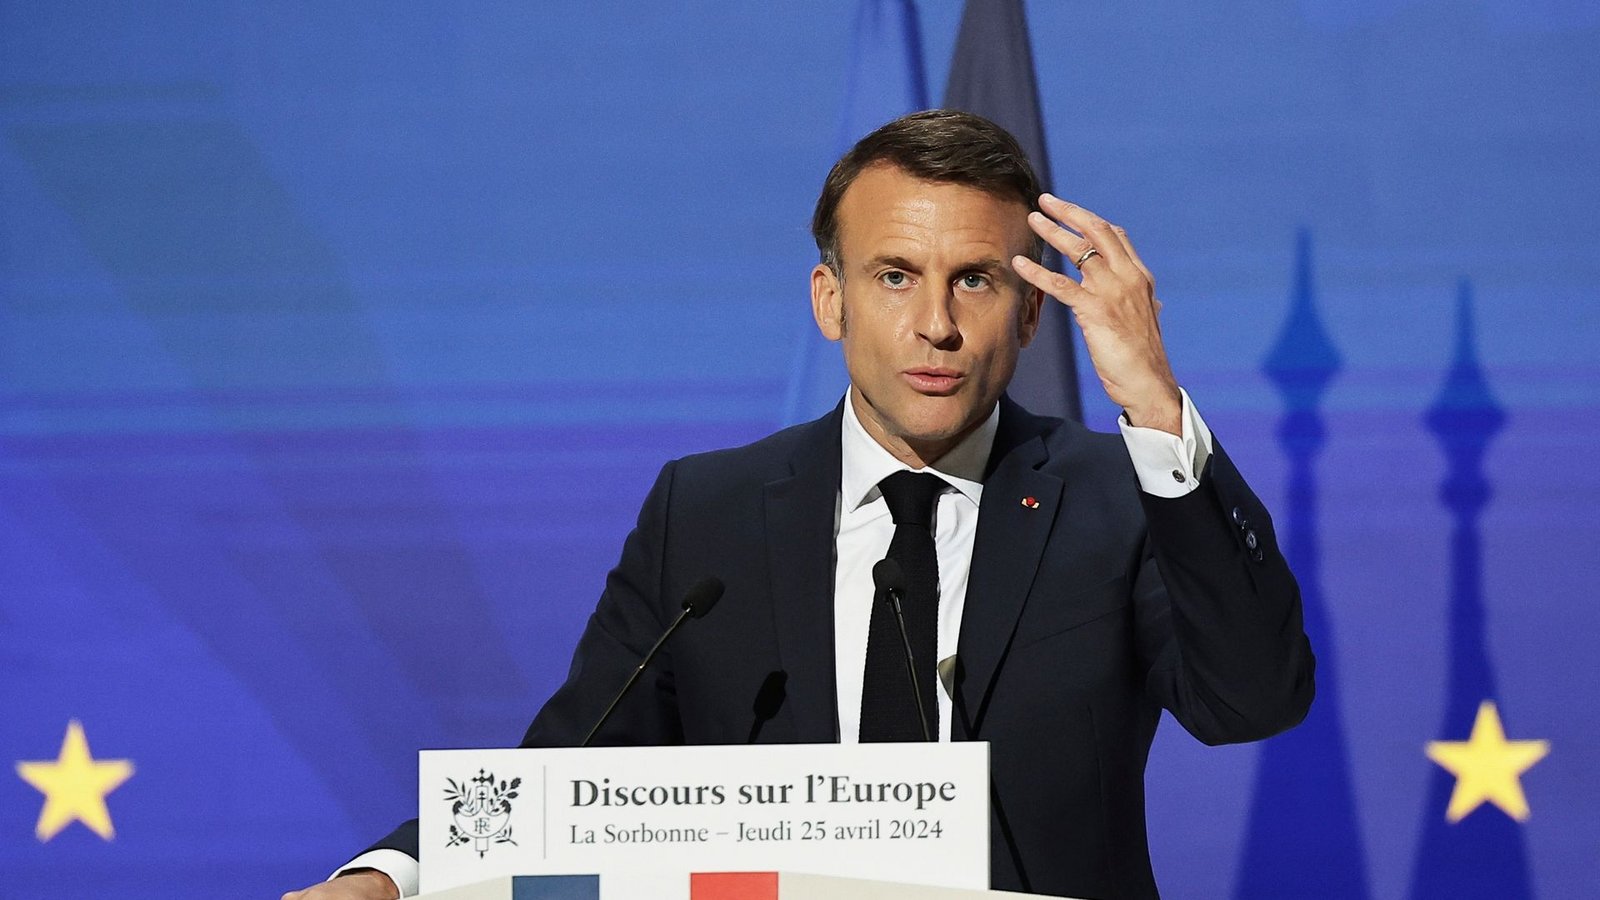 Der französische Präsident Emmanuel Macron fordert eine europäische Verteidigungsstrategie mit einer gemeinsamen Rüstungsindustrie und einer über Fonds der EU finanzierte beschleunigte Aufrüstung.Foto: Christophe Petit Tesson/EPA POOL/AP/dpa